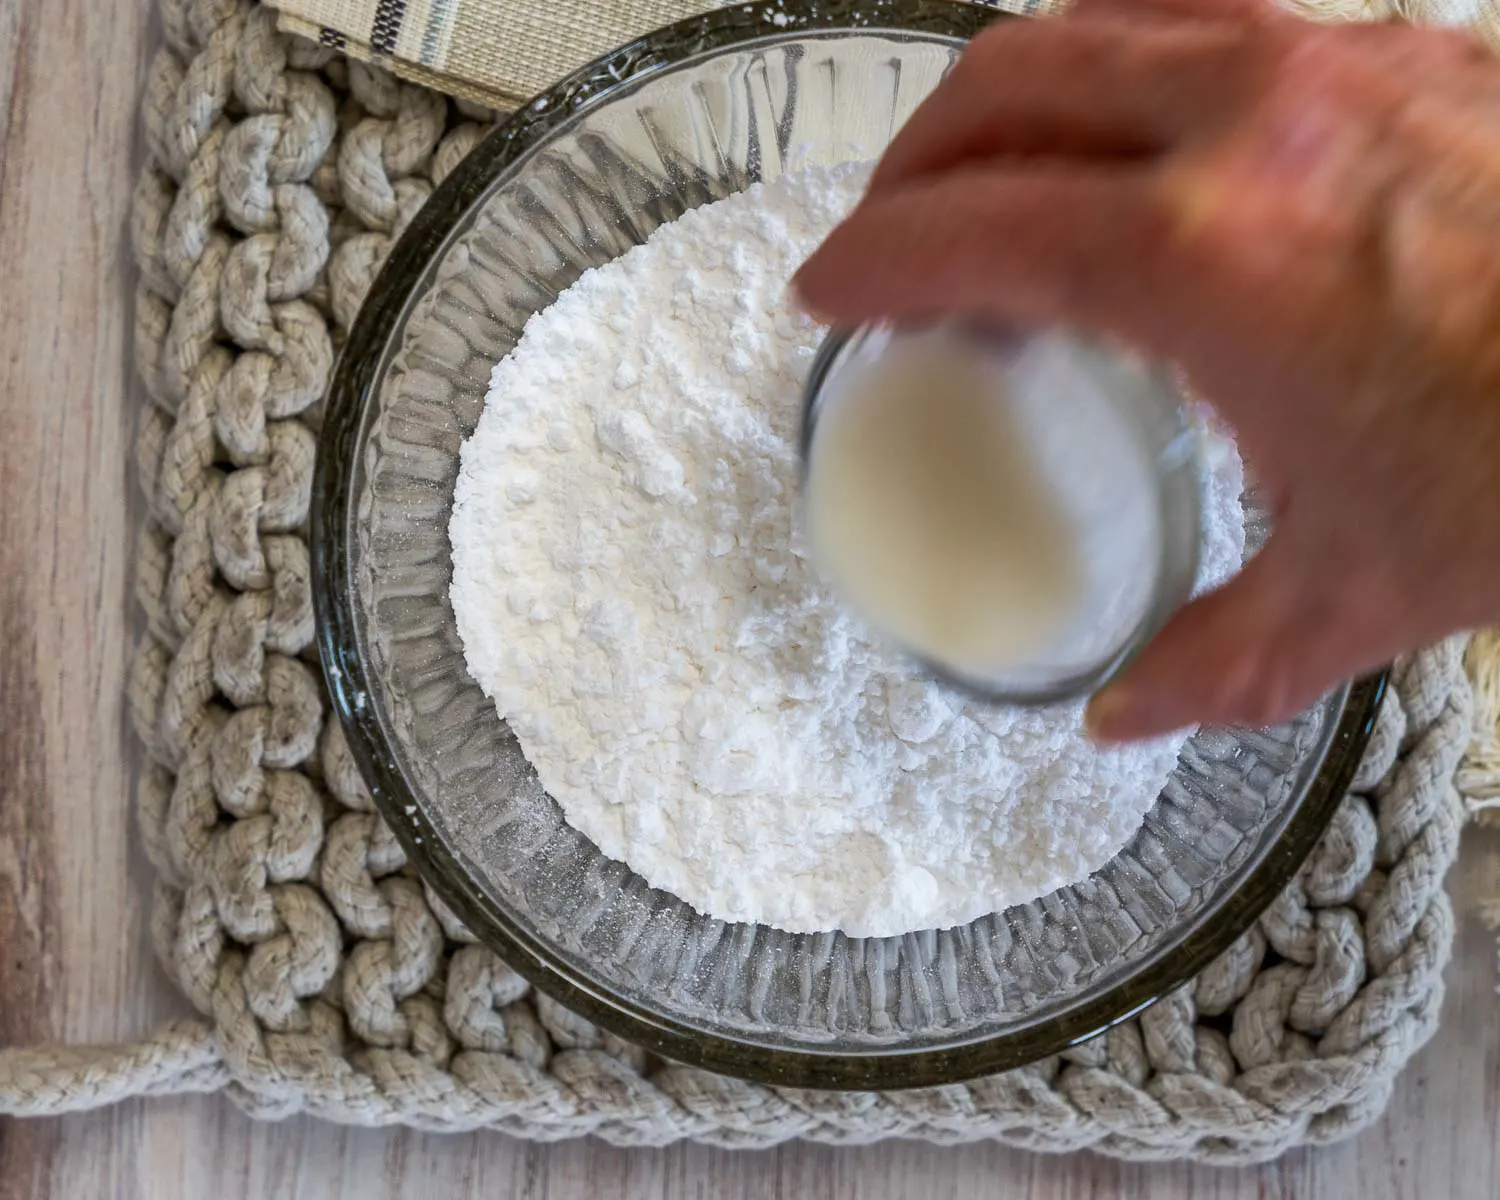 Milk being added to powdered sugar.